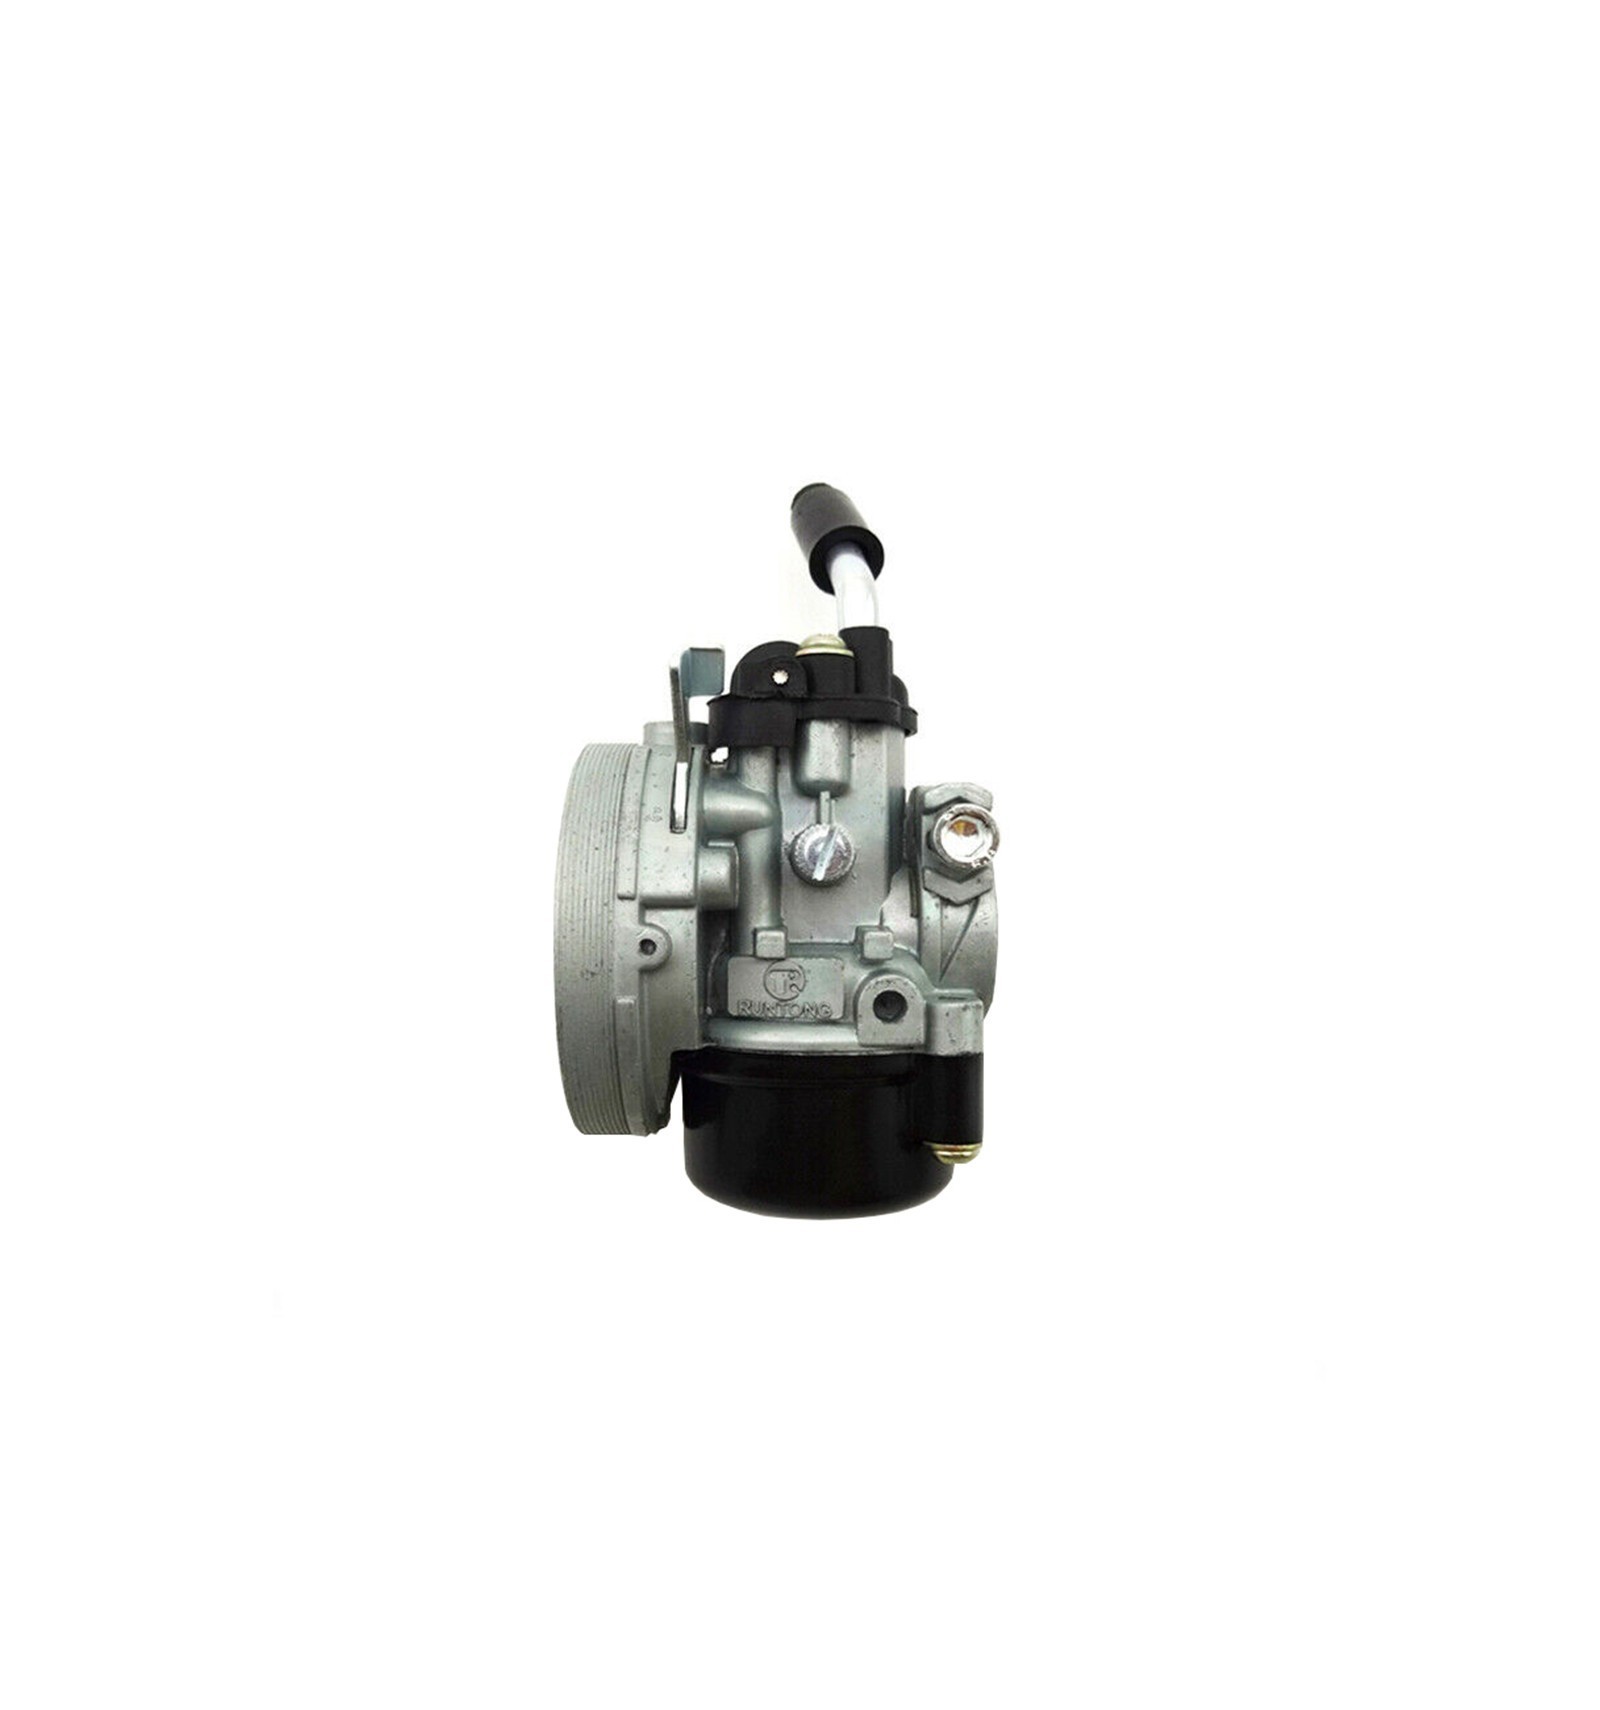 Carburador Miniquad/Minimoto - Milano Motor